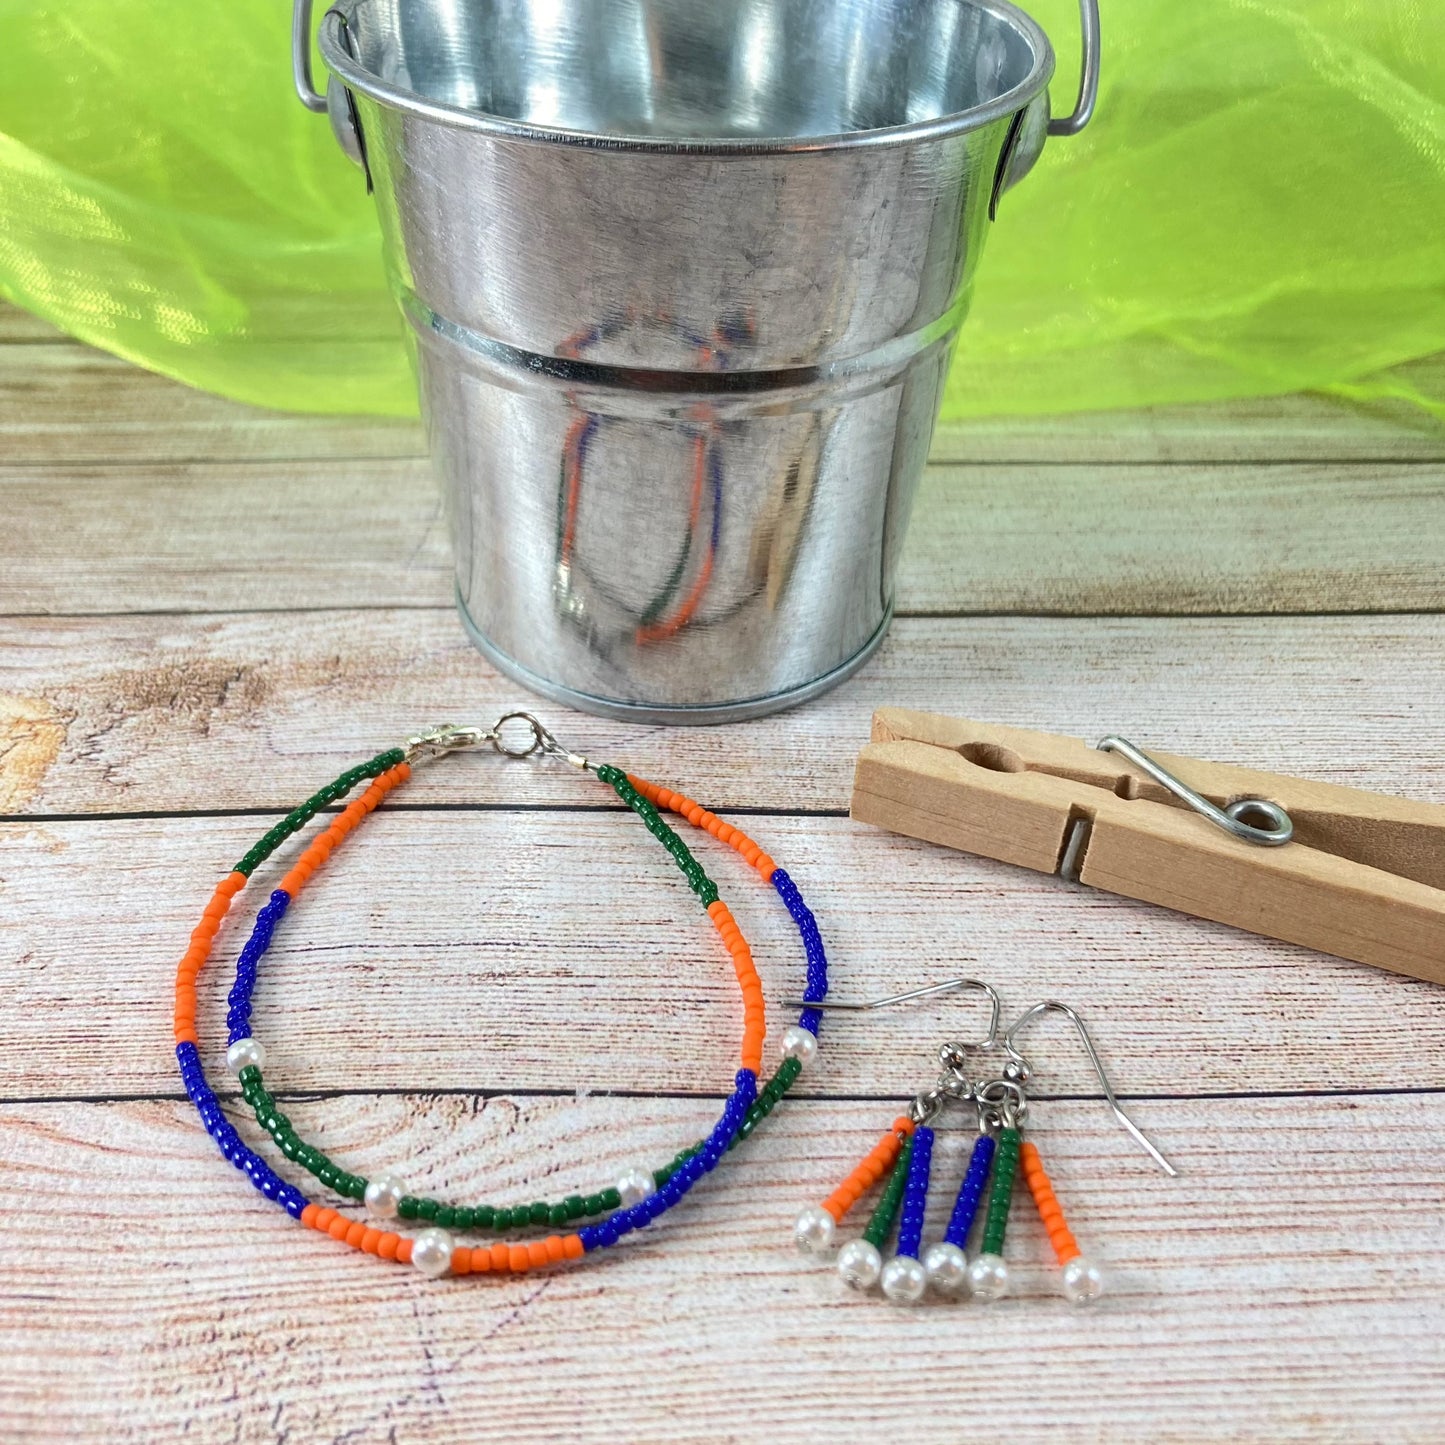 FFB31 - Friendship Bracelet & Earrings - Blue, Orange & Green